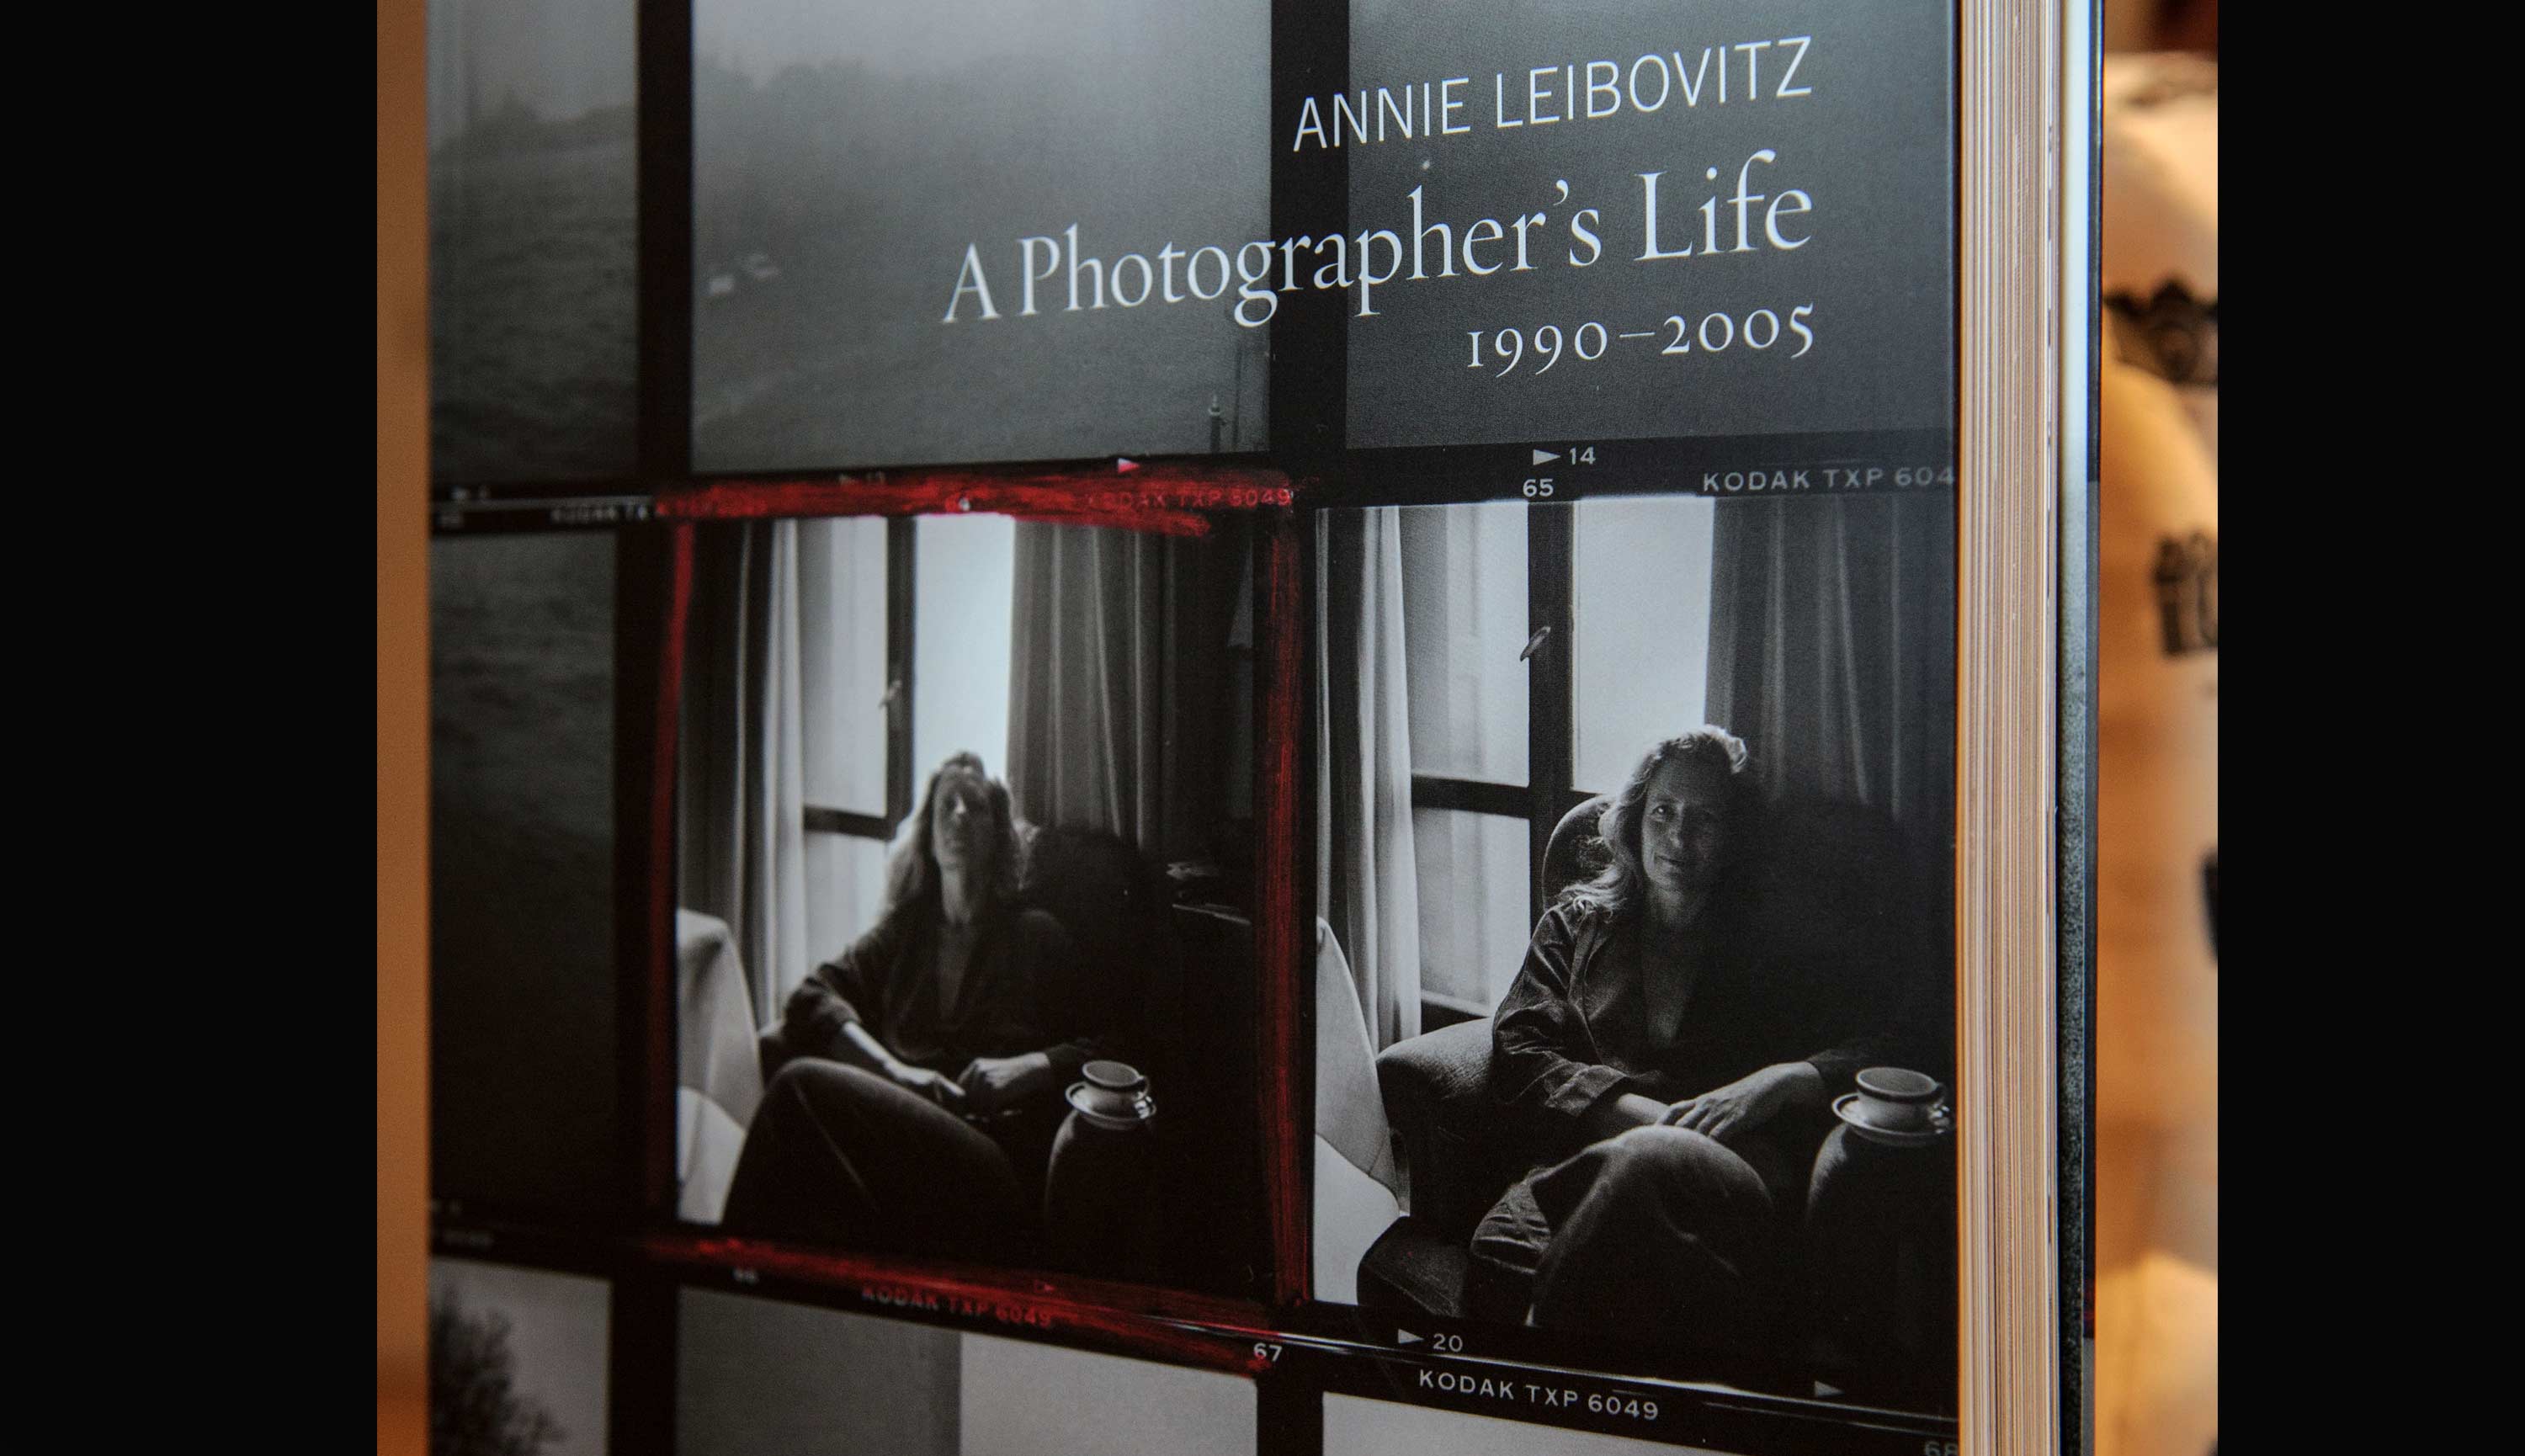 安妮•萊博維茨 (Annie Leibovitz) 攝影師的生活寫照 (1990 - 2005) 畫冊